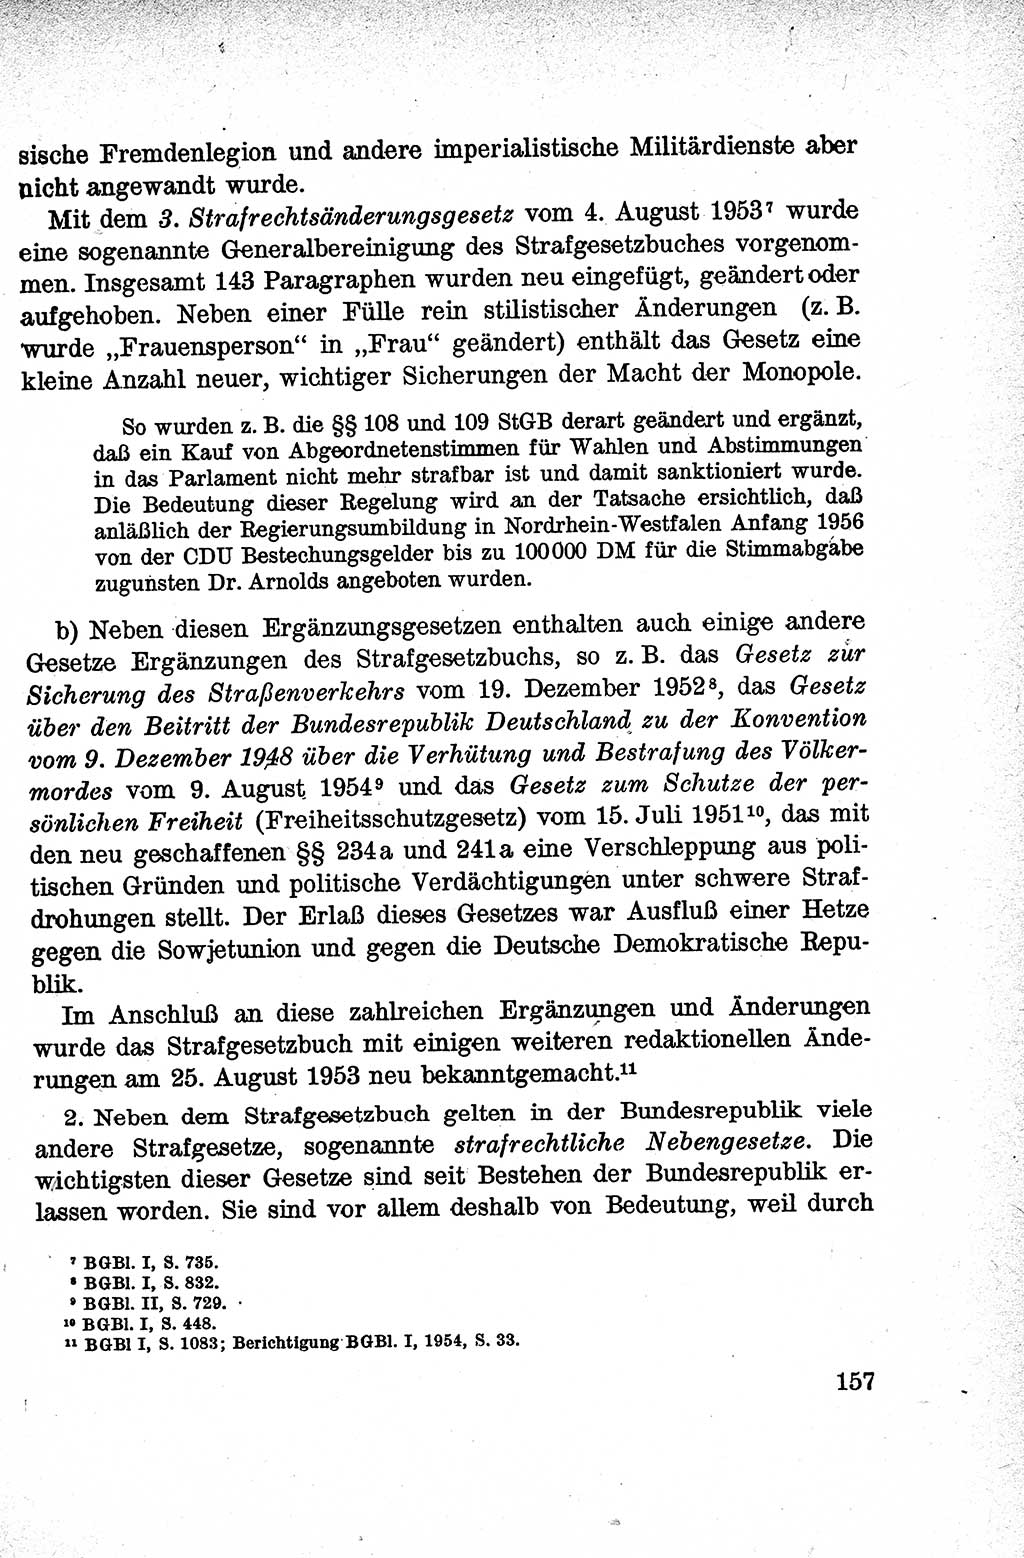 Lehrbuch des Strafrechts der Deutschen Demokratischen Republik (DDR), Allgemeiner Teil 1959, Seite 157 (Lb. Strafr. DDR AT 1959, S. 157)